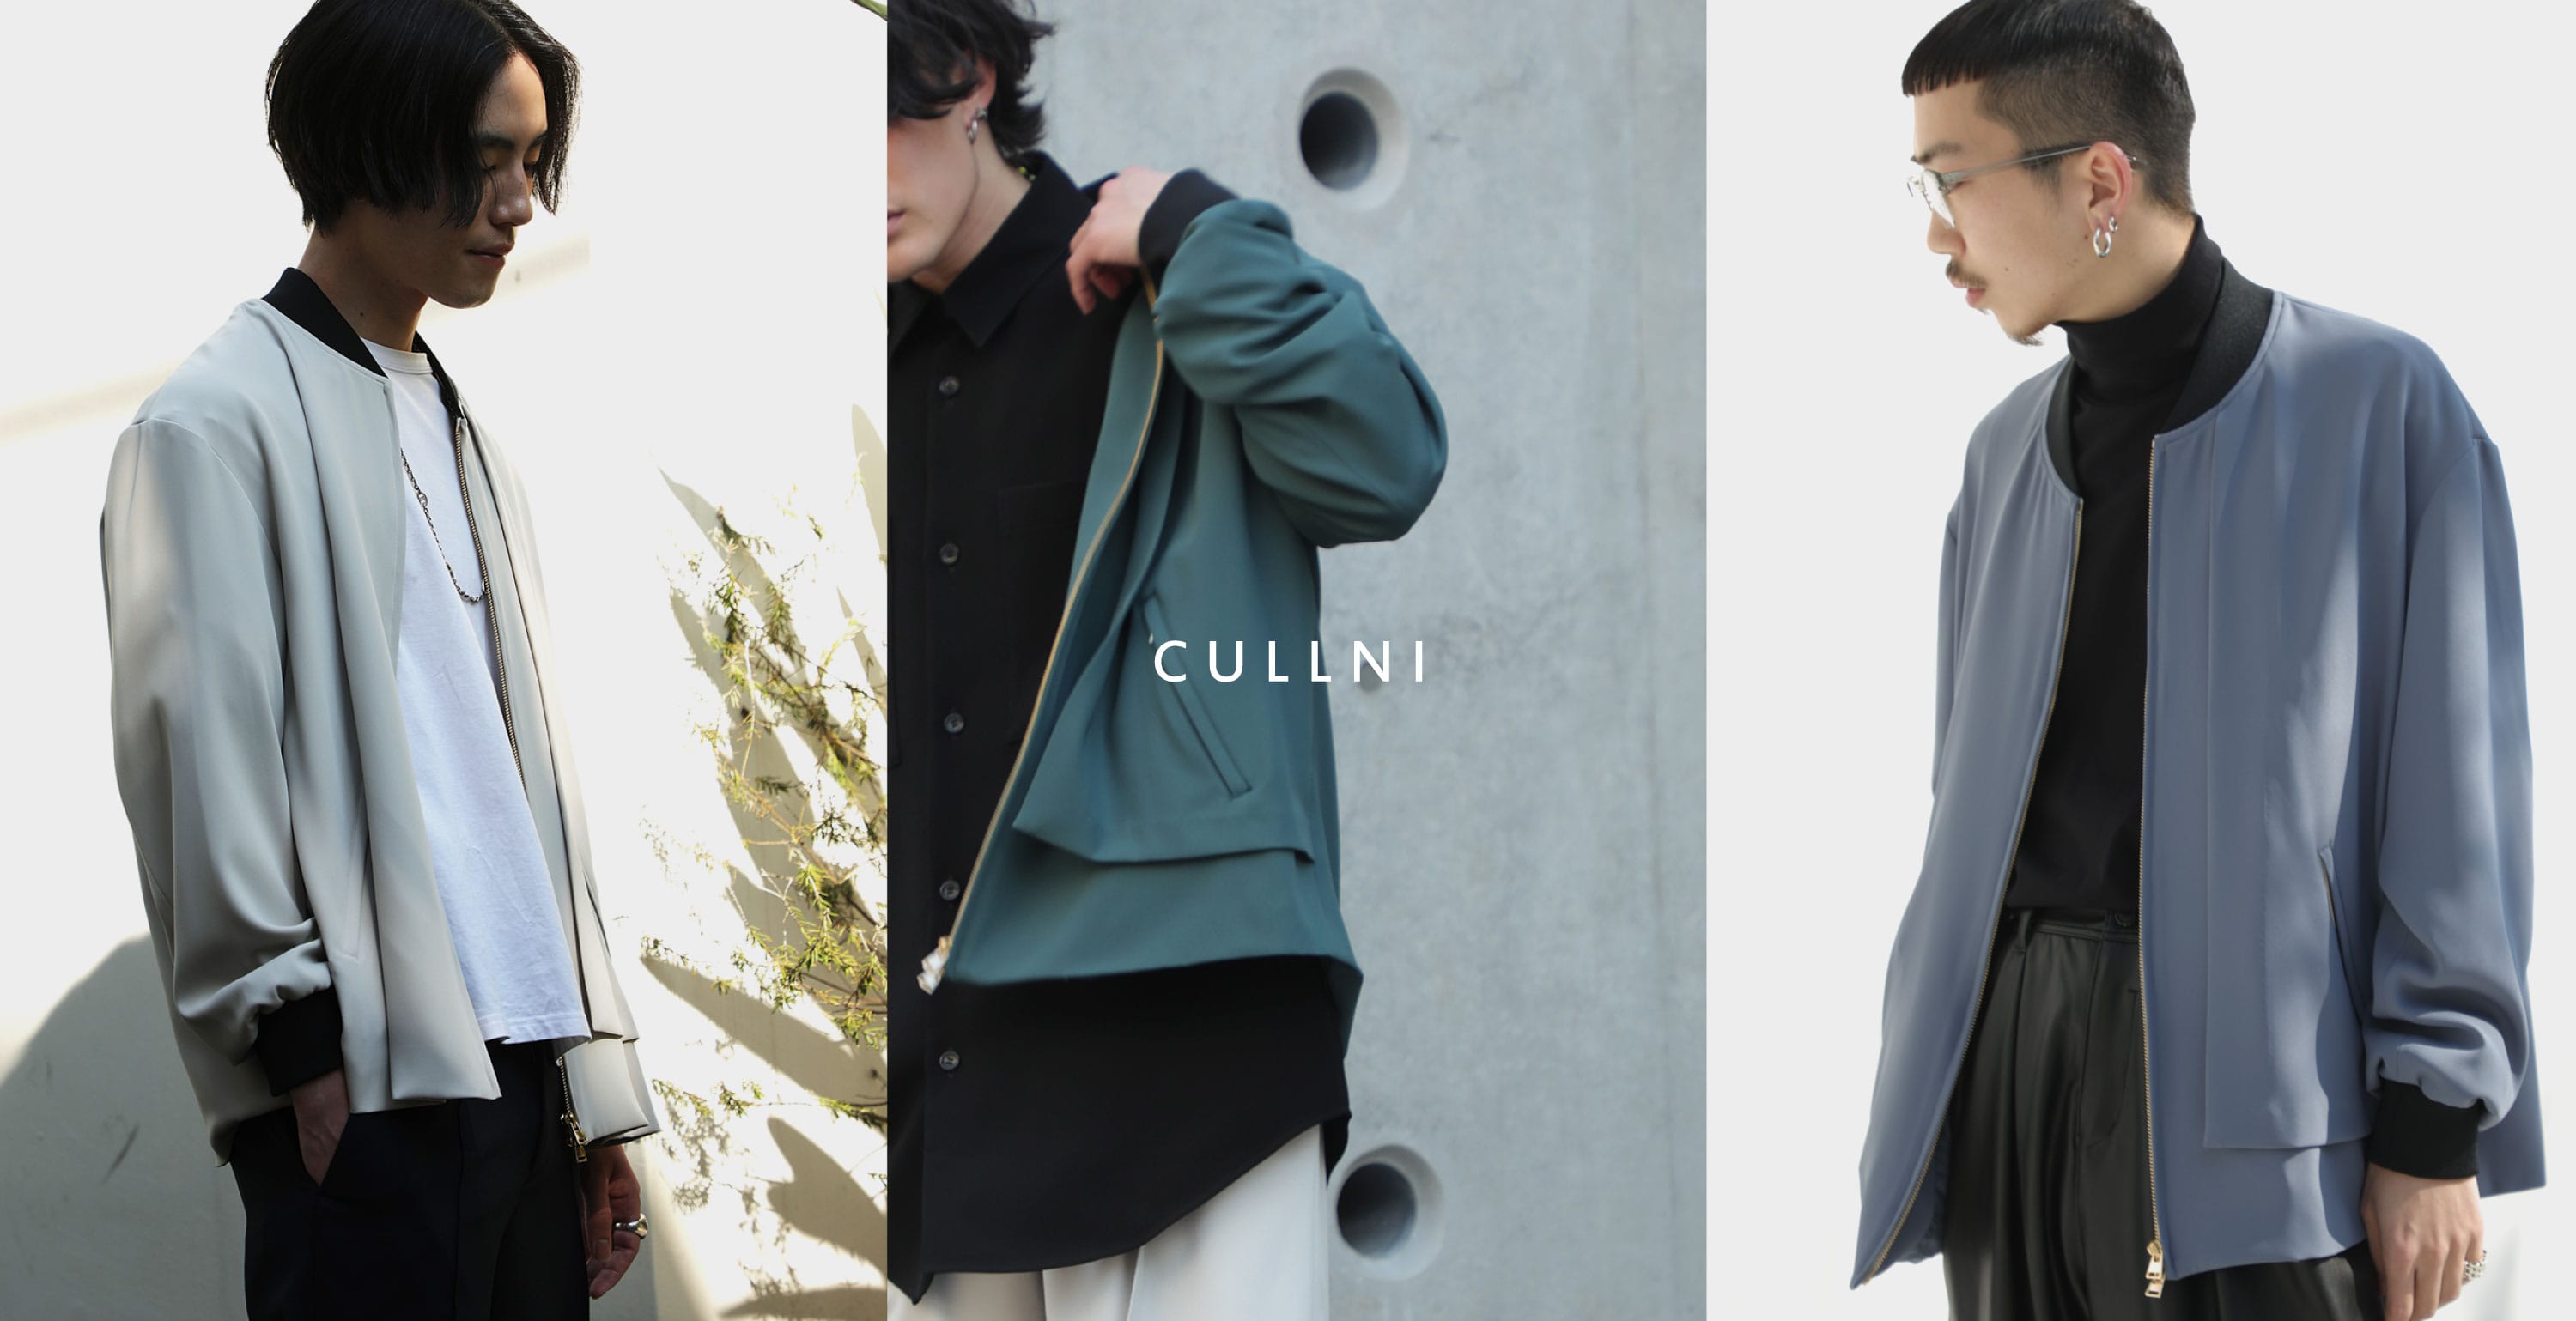 CULLNI blouson style | STUDIOUS MENS｜ STUDIOUS ONLINE公式通販サイト